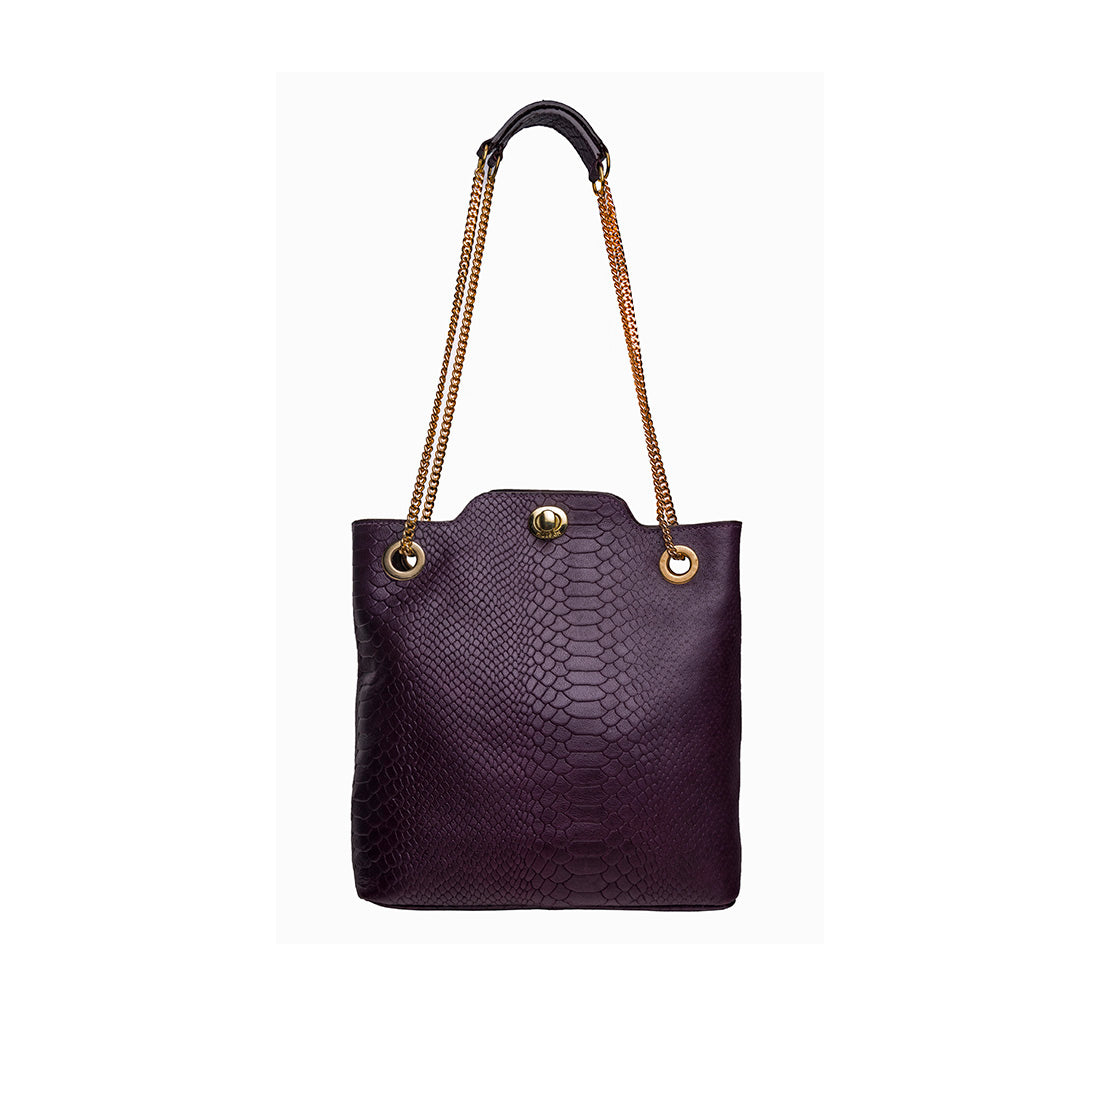 Buy Red Estelle Small Shoulder Bag Online - Hidesign